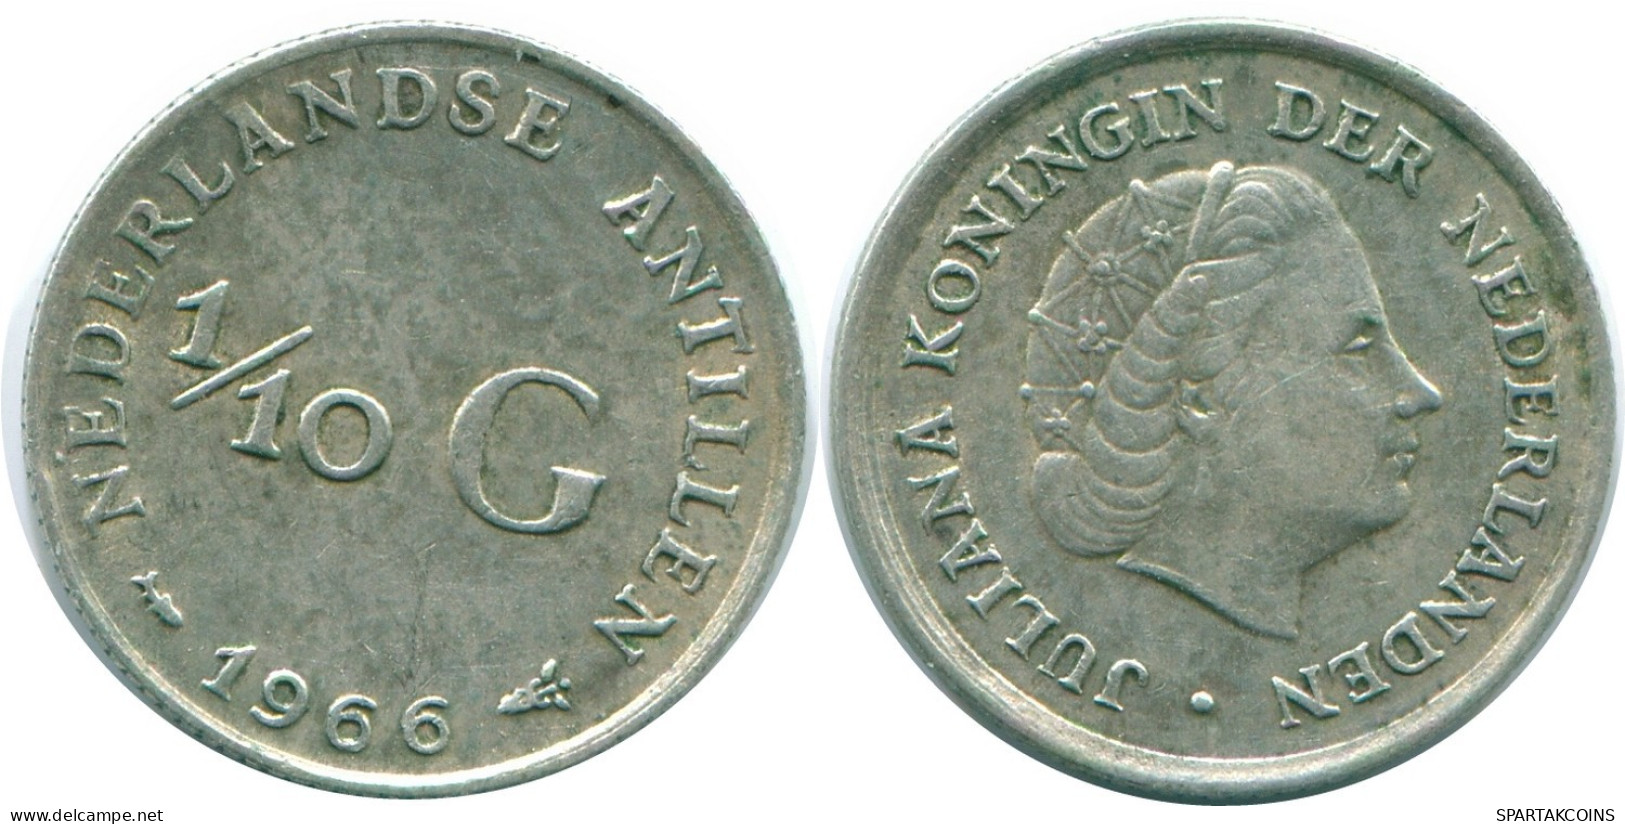 1/10 GULDEN 1966 NIEDERLÄNDISCHE ANTILLEN SILBER Koloniale Münze #NL12823.3.D.A - Niederländische Antillen